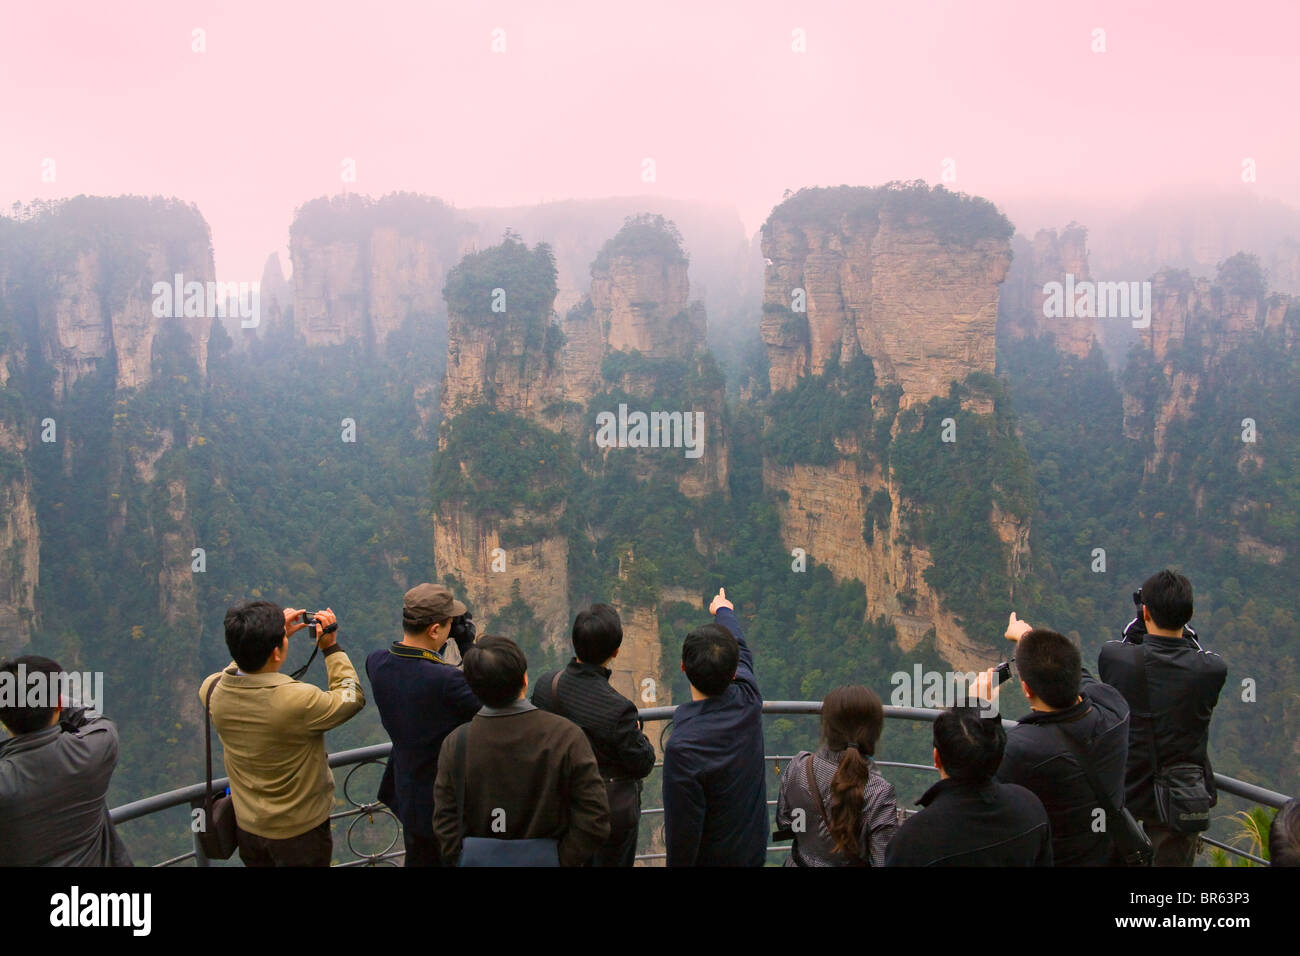 Les touristes regardant des pics de montagne, parc forestier national de Zhangjiajie, Wulingyuan Scenic Area, Province du Hunan, Chine Banque D'Images